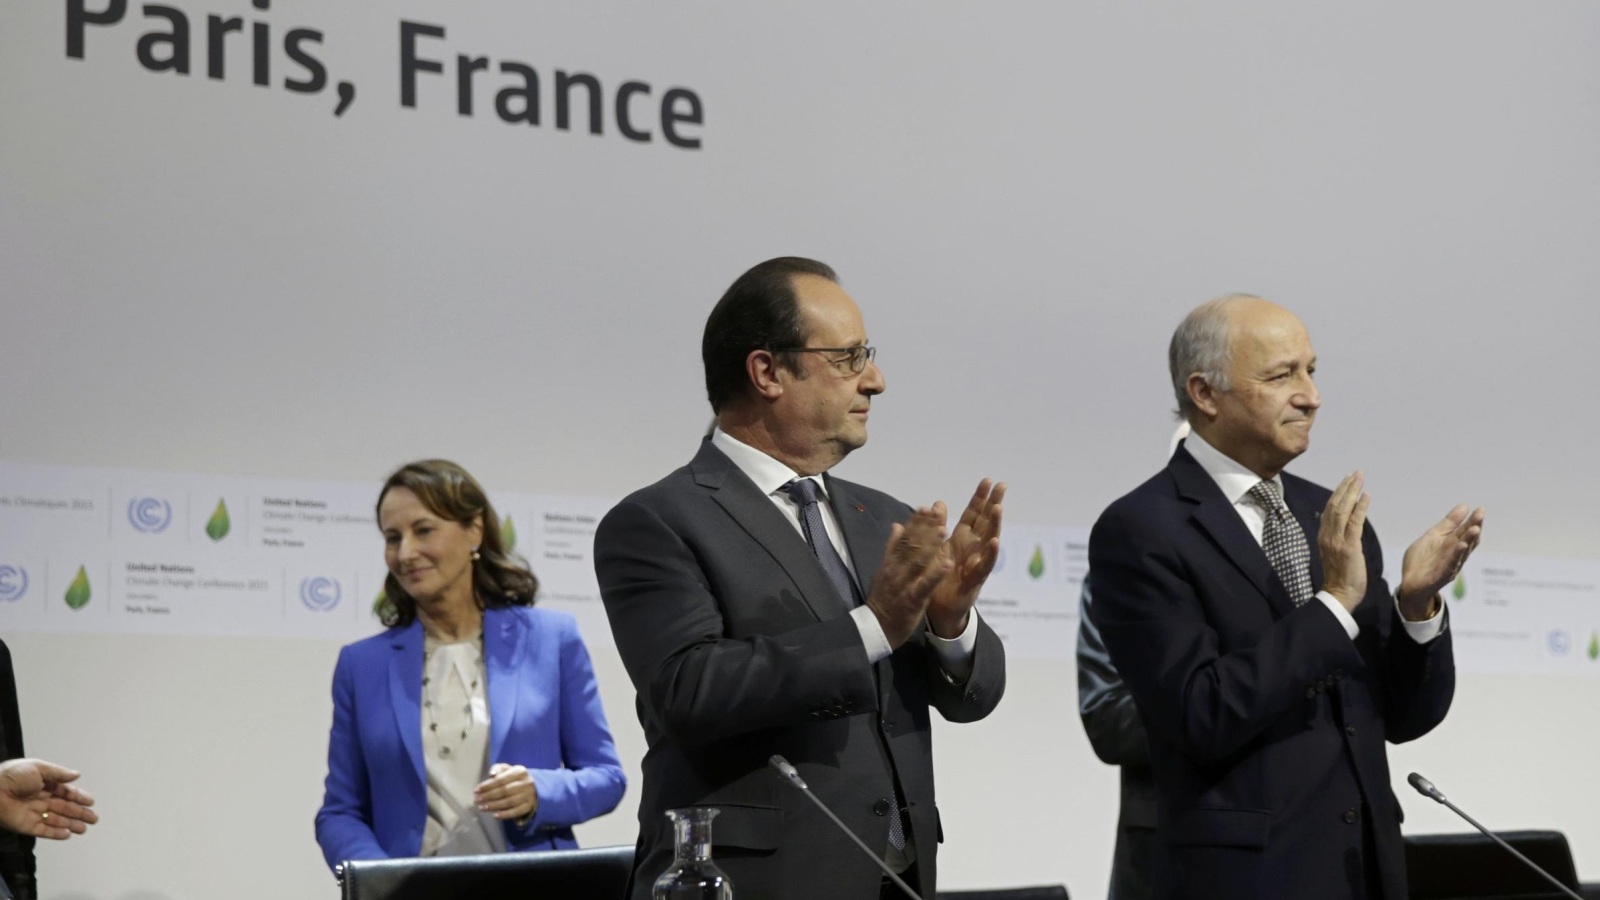 ‪‬ الرئيس الفرنسي فرانسوا هولاند ووزير الخارجية لوران فابيوس أثناء جلسة توقيع الاتفاق(رويترز)